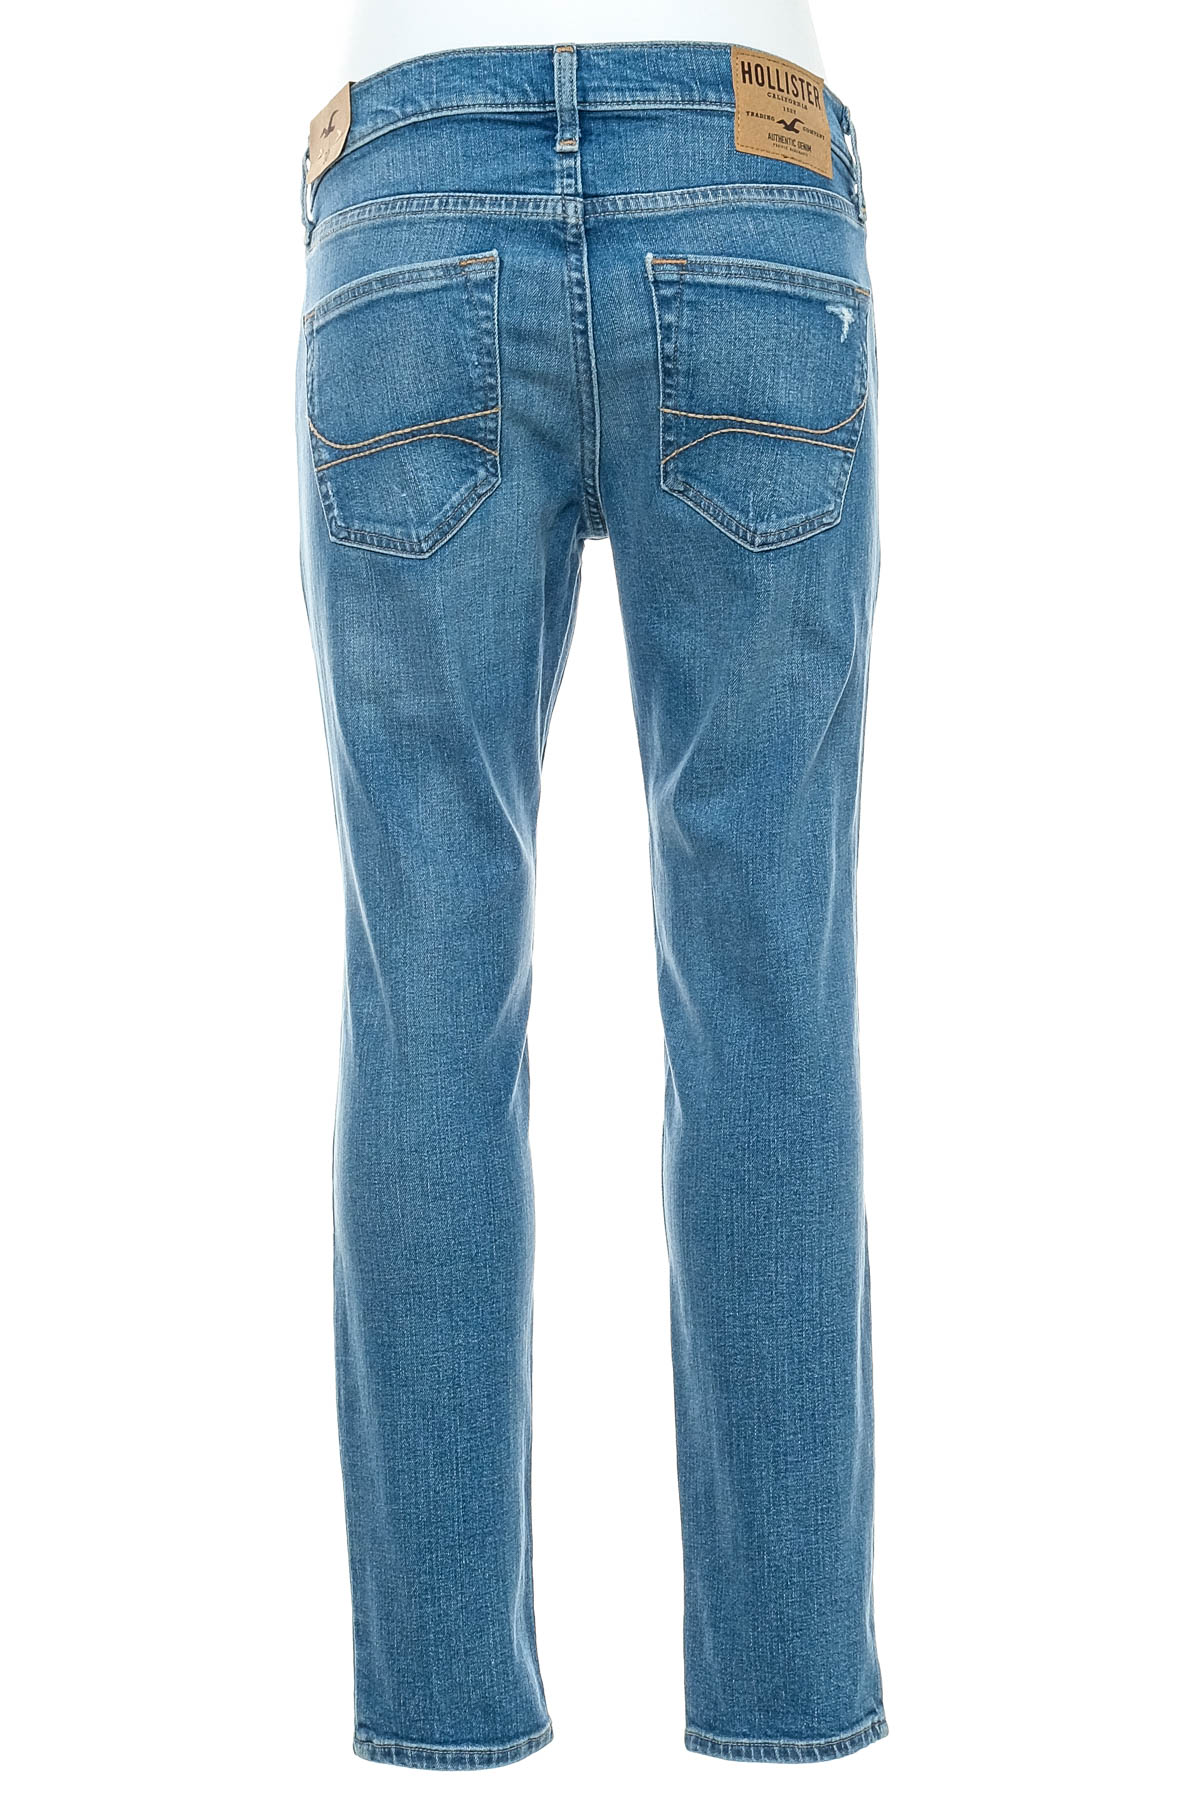 Jeans pentru bărbăți - HOLLISTER - 1